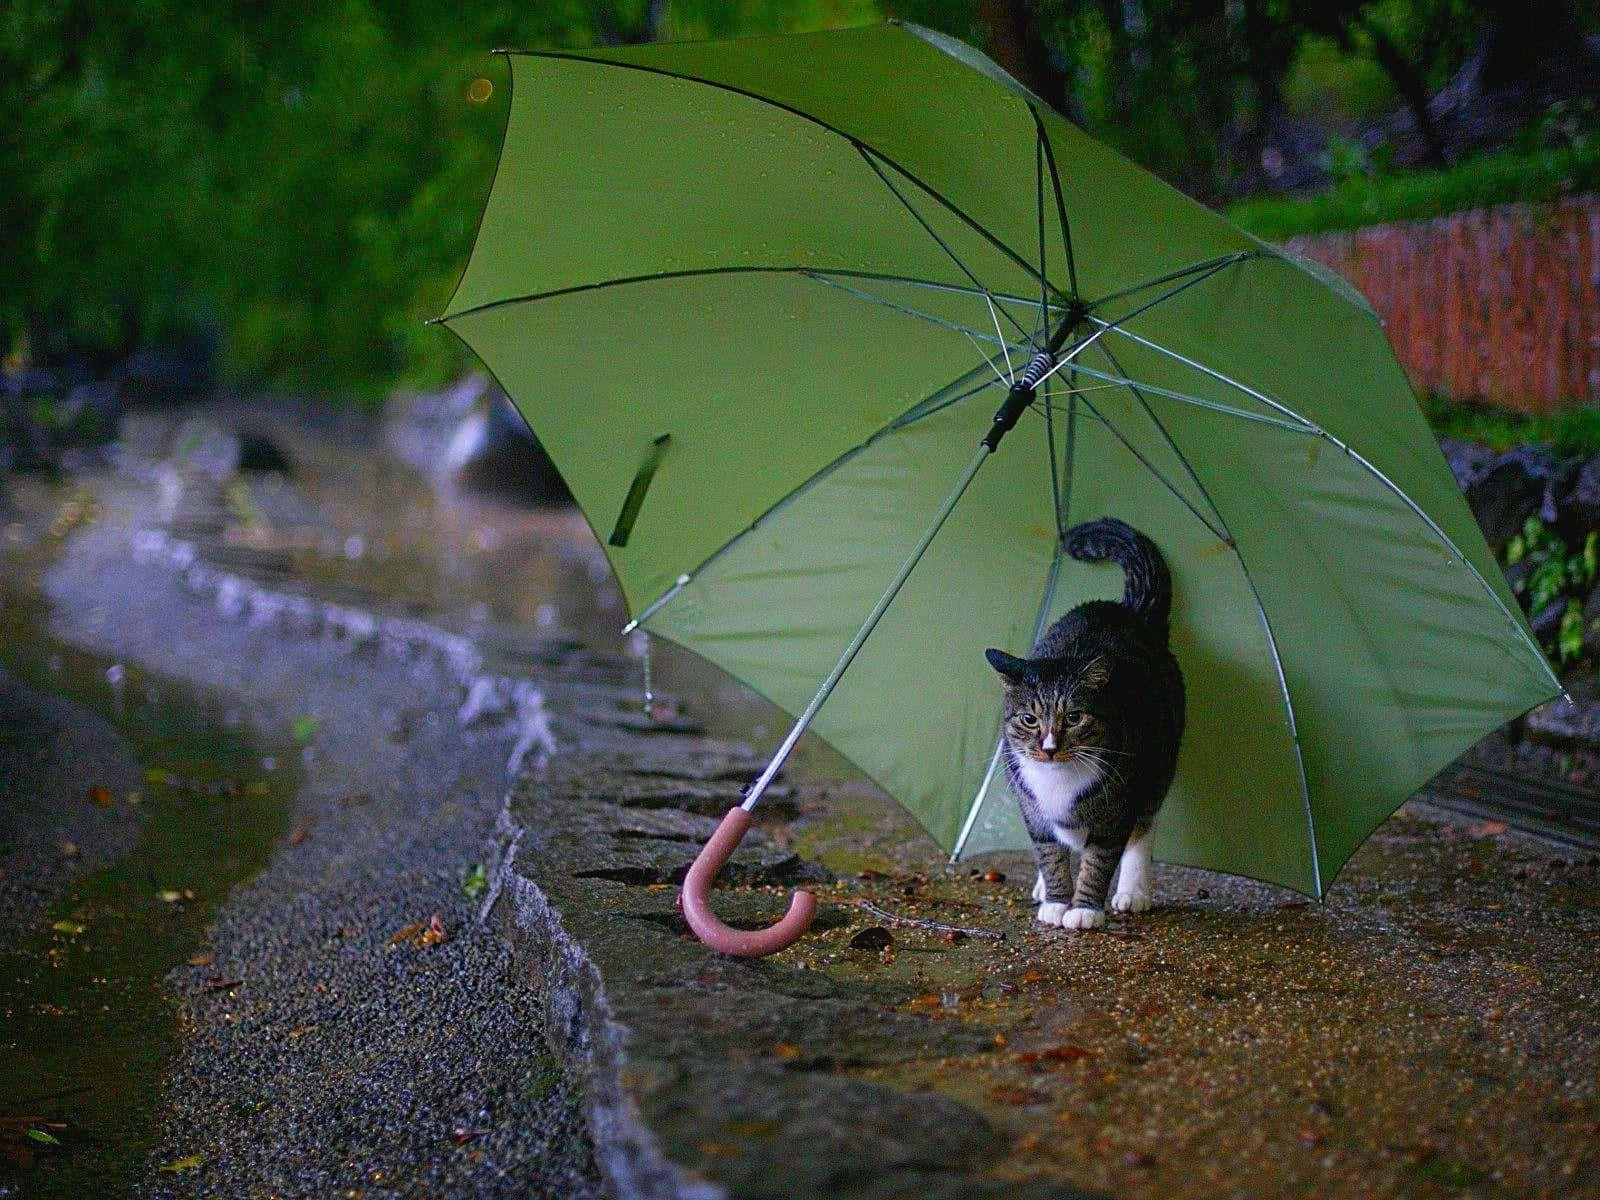 Imagende Un Gato Debajo De Un Paraguas En Un Día Lluvioso.